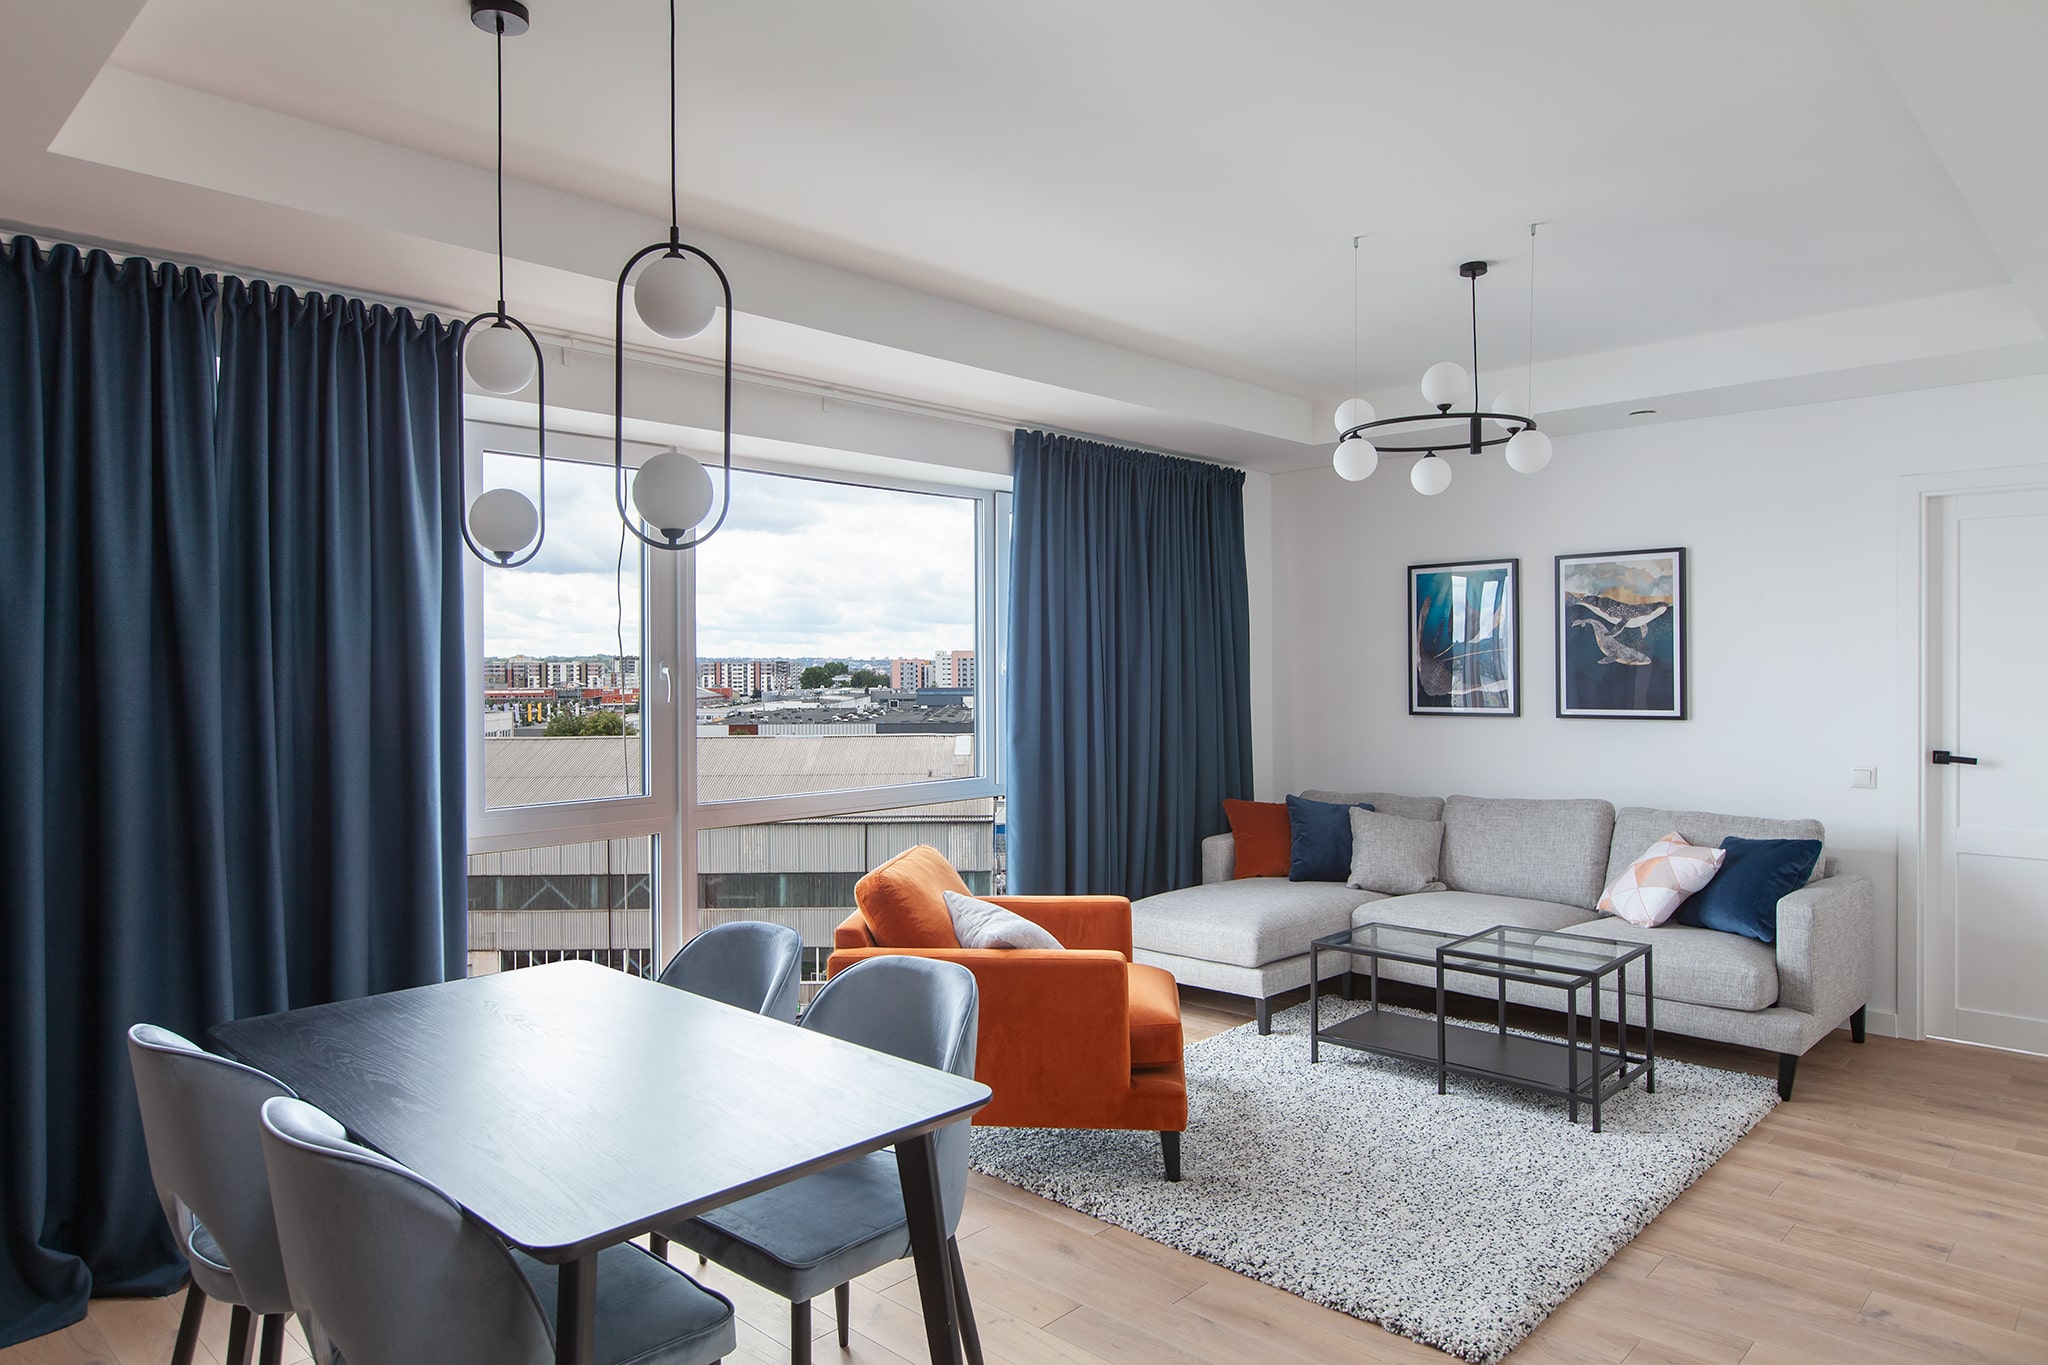 Erdvus ir racionaliai išplanuotas butas turi du atskirus miegamuosius ir vieną gyvenamą kambarį, sujungtą su virtuvės zona